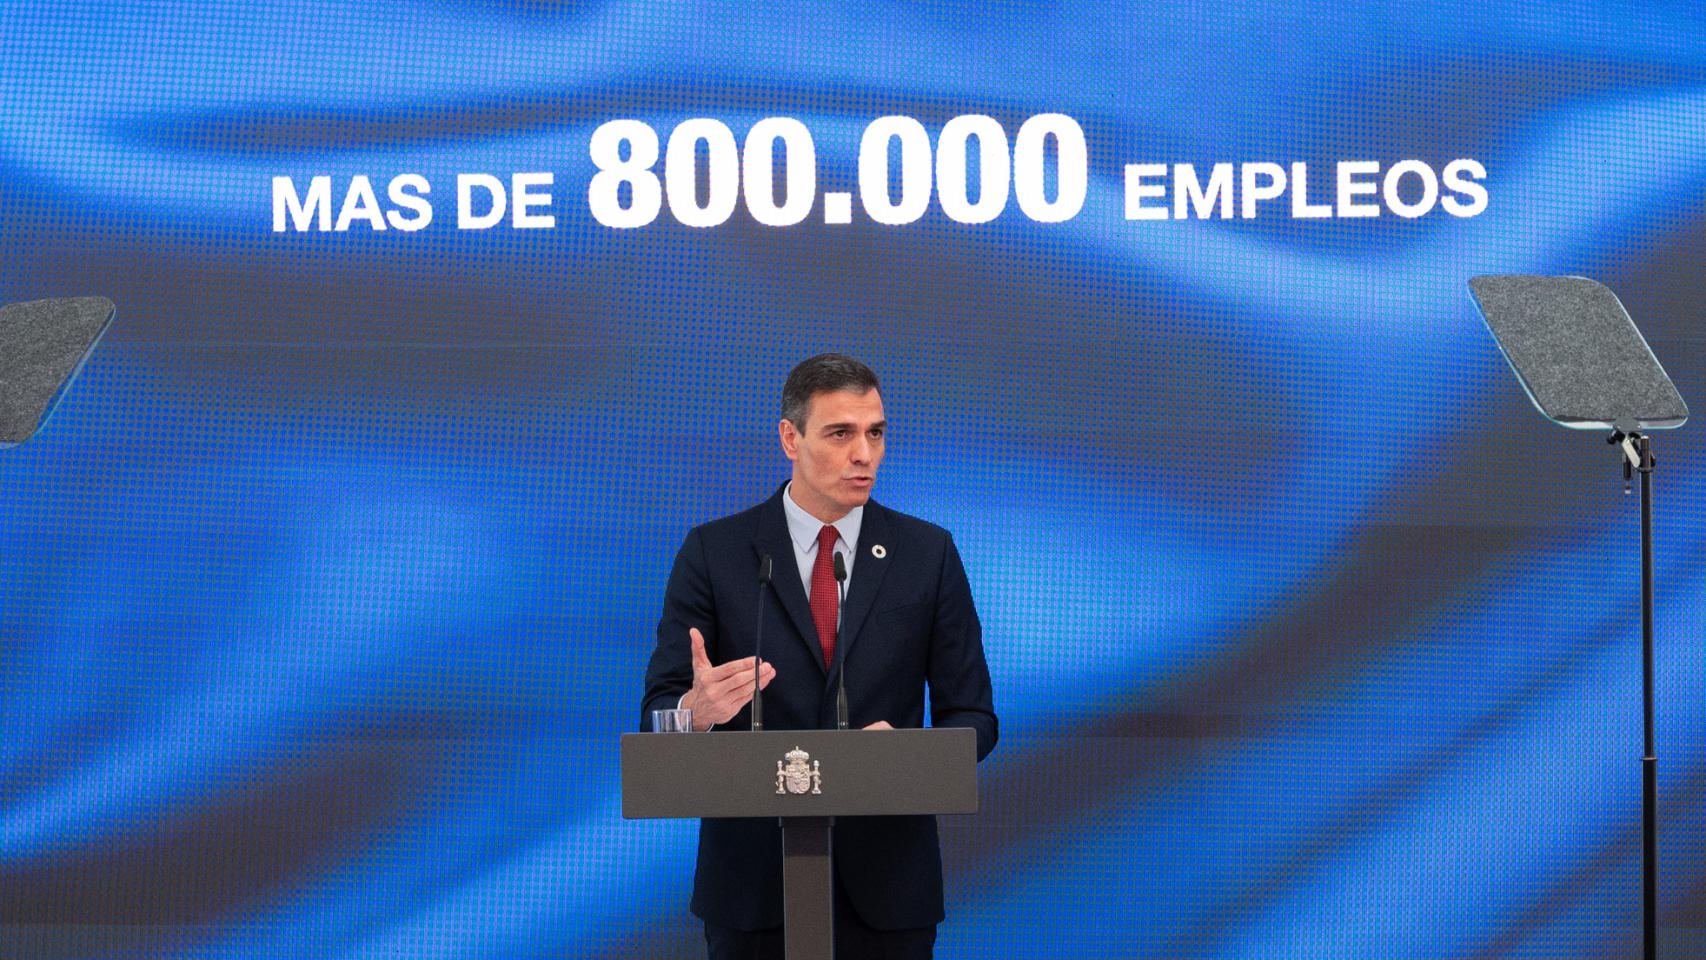 El presidente del Gobierno, Pedro Sánchez, promete 800.000 empleos en tres años.